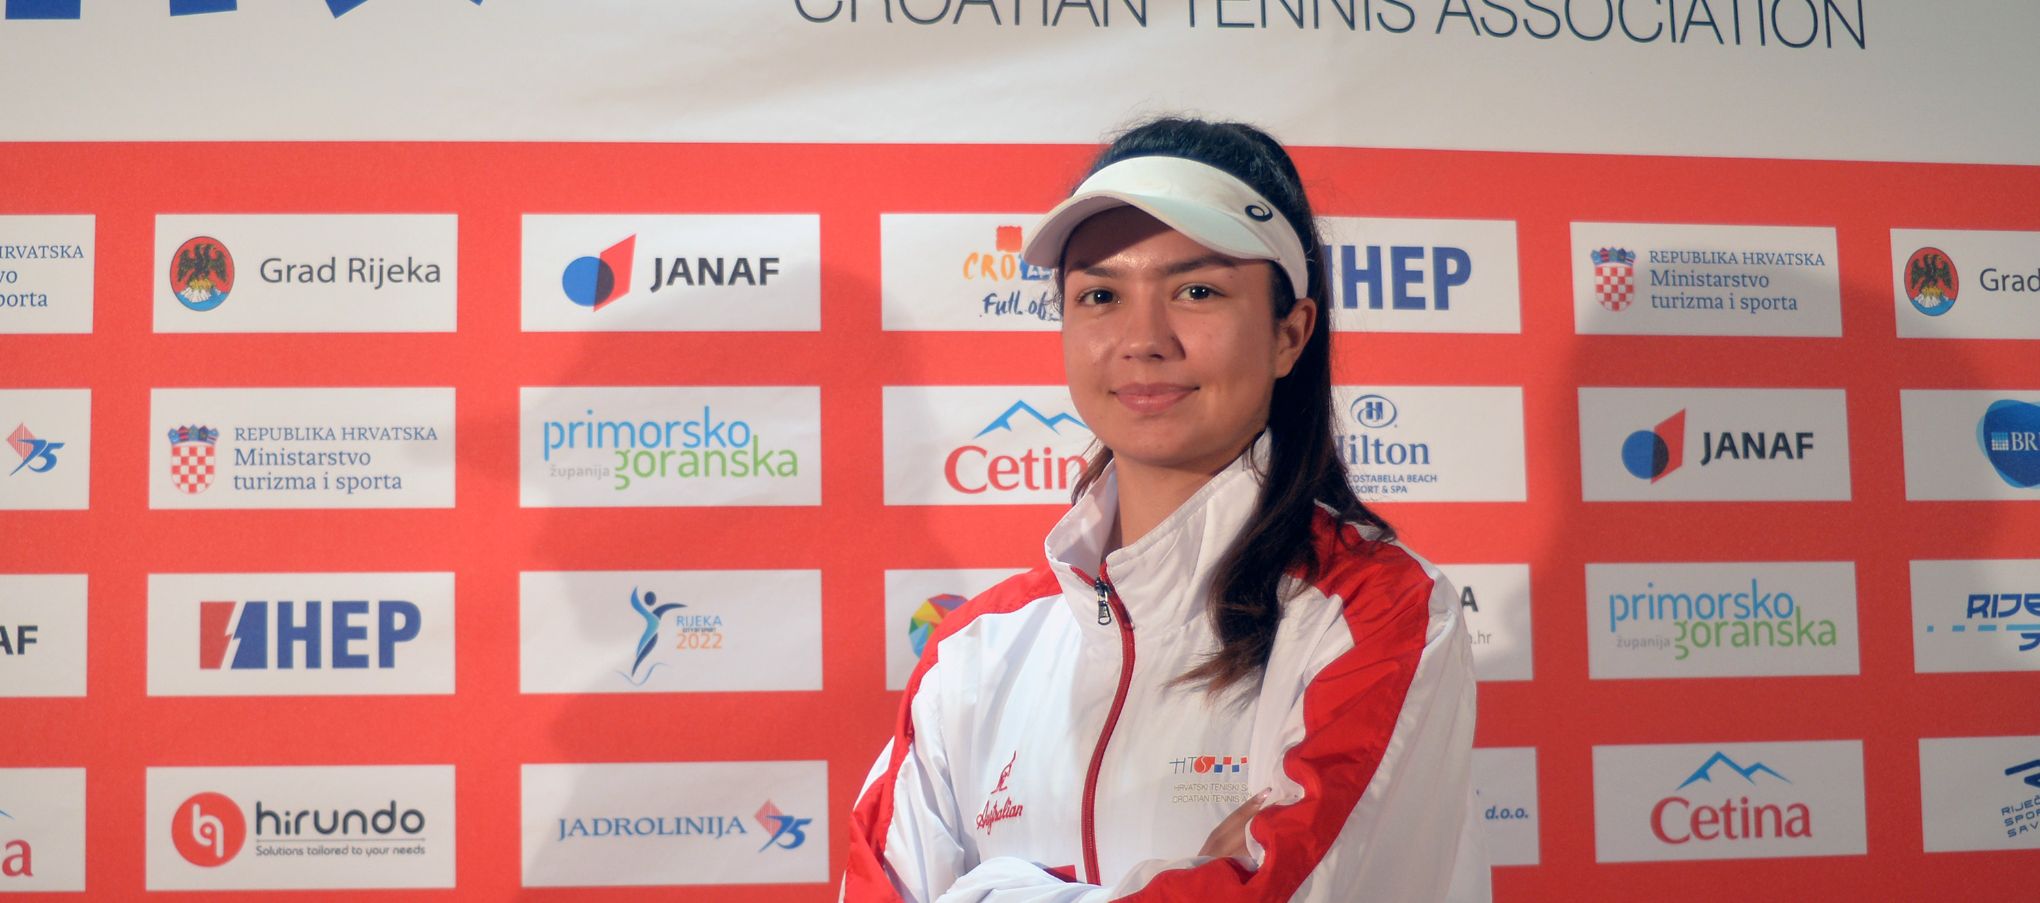 Petra Marčinko u završnici ITF World Tennis Toura u Portugalu, nadjačala 1. juniorku svijeta!